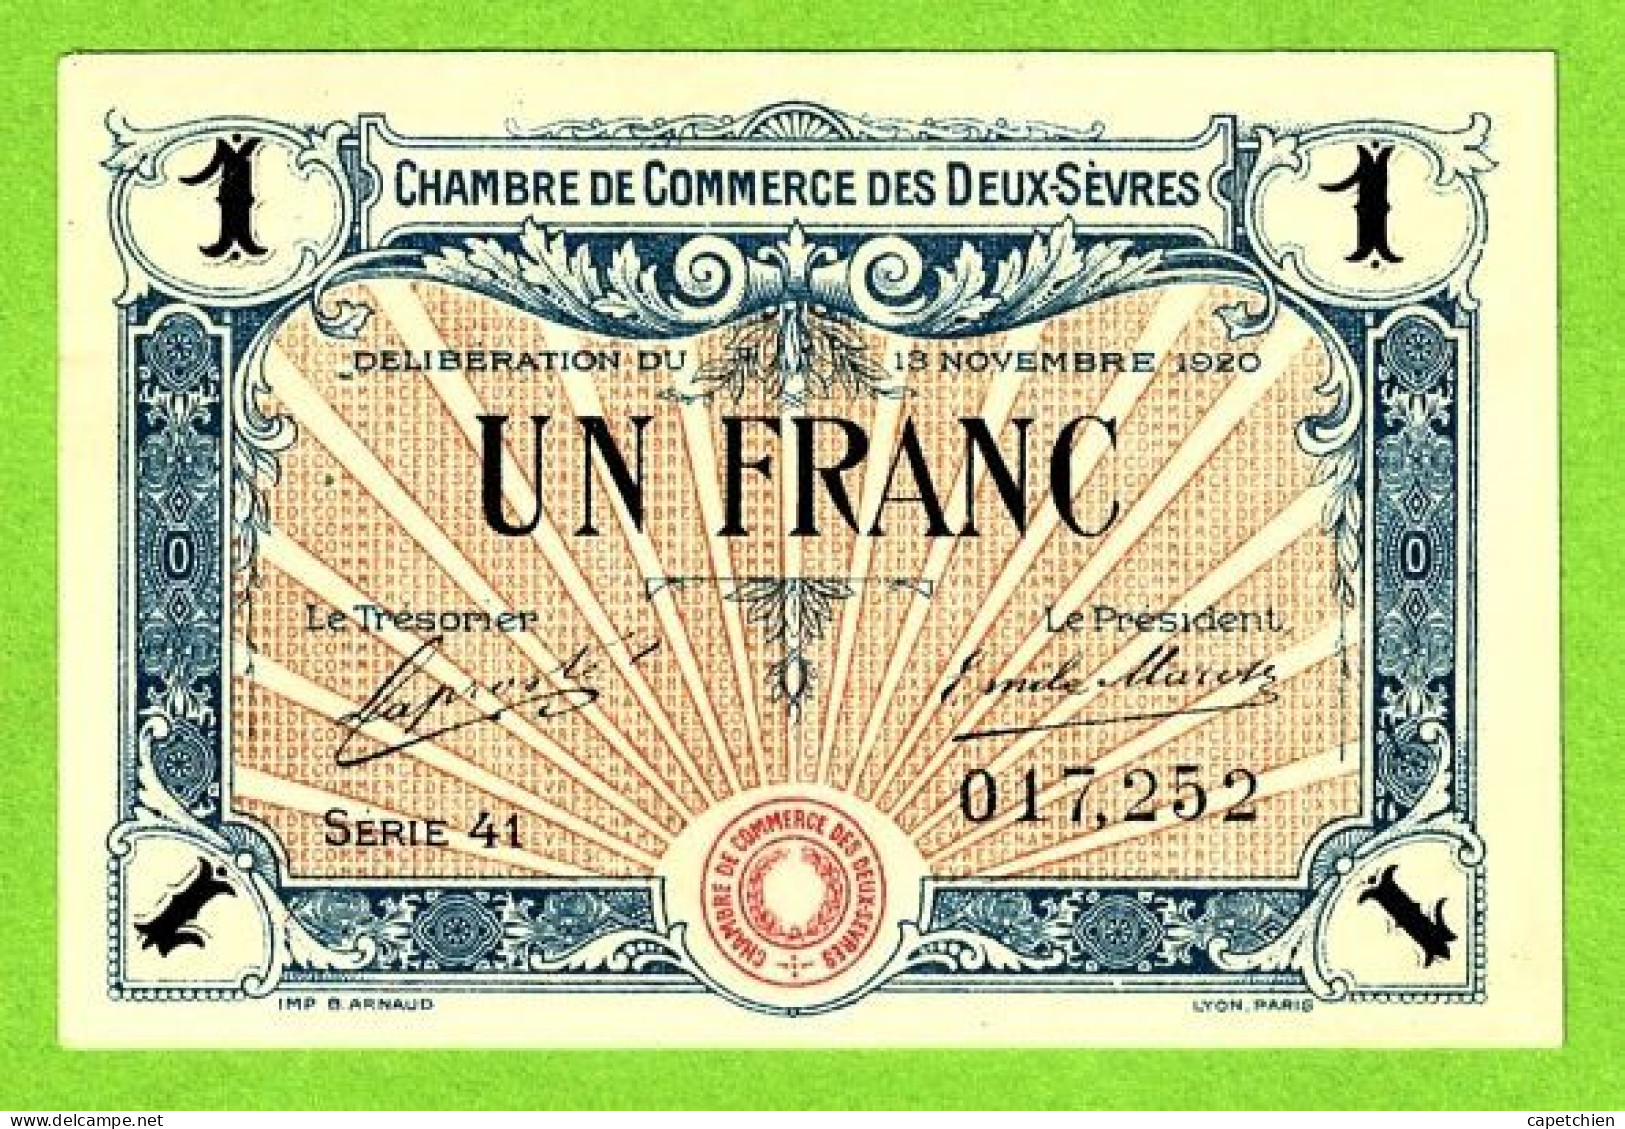 FRANCE/ CHAMBRE DE COMMERCE Des DEUX SÈVRES / 1 FRANC / 13 NOVEMBRE 1920 / 017,252 - Chambre De Commerce